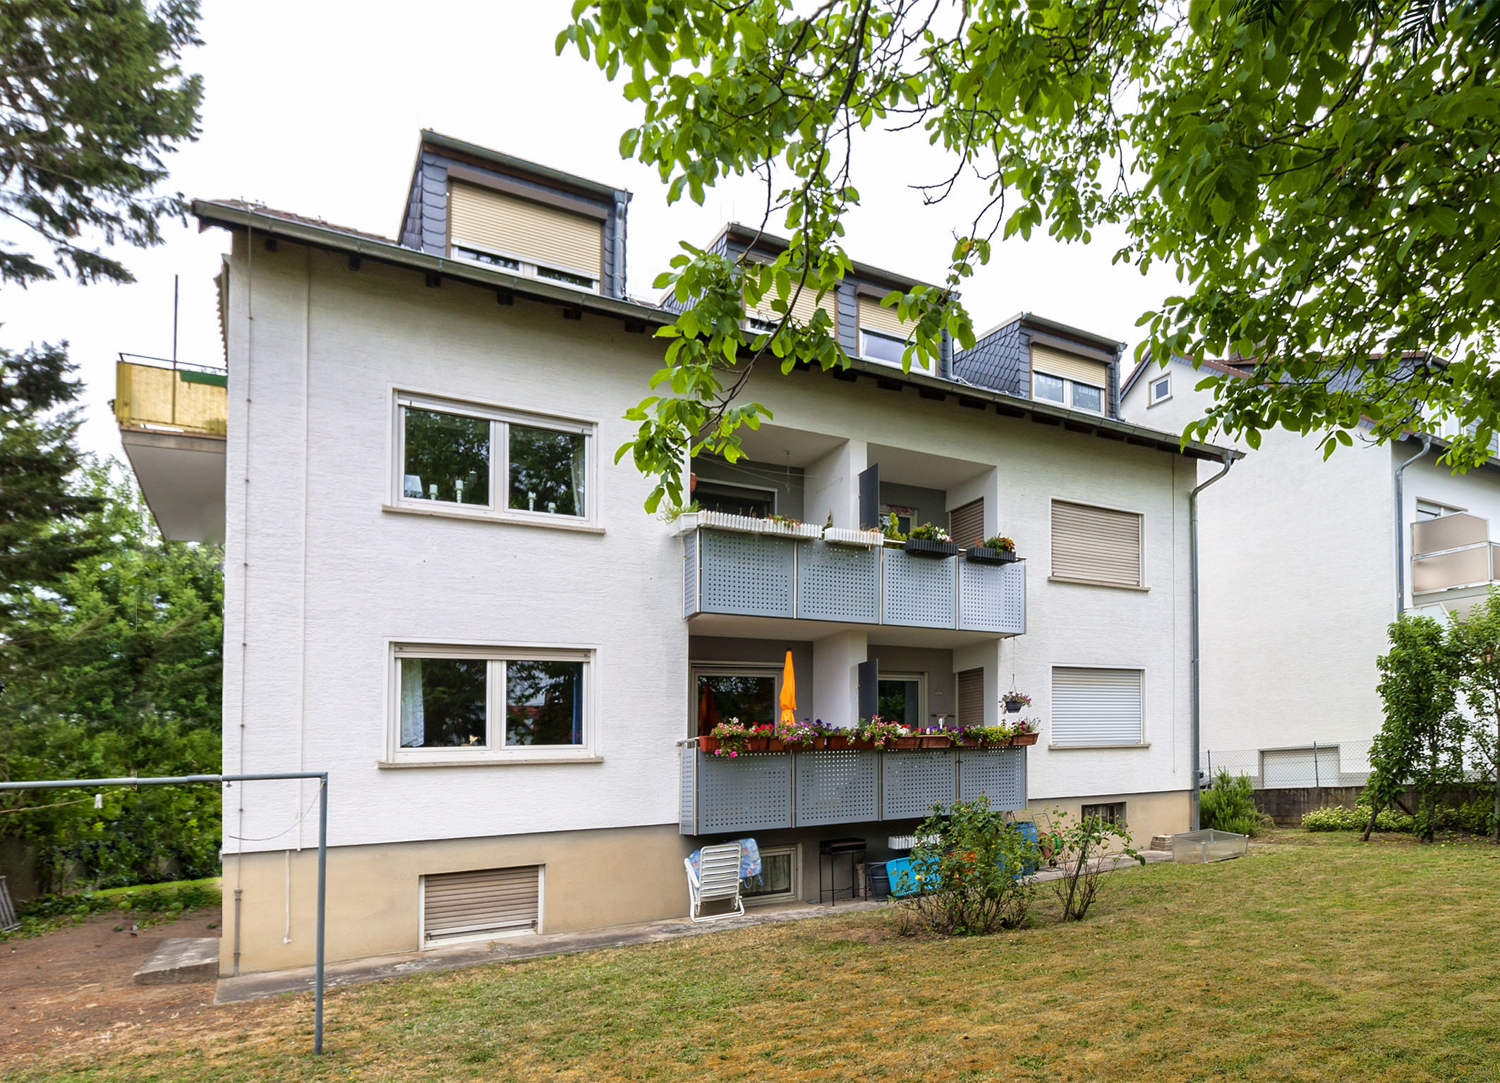 Vollvermietetes 6-Familienhaus in ruhiger Wohnlage von Seeheim-Jugenheim